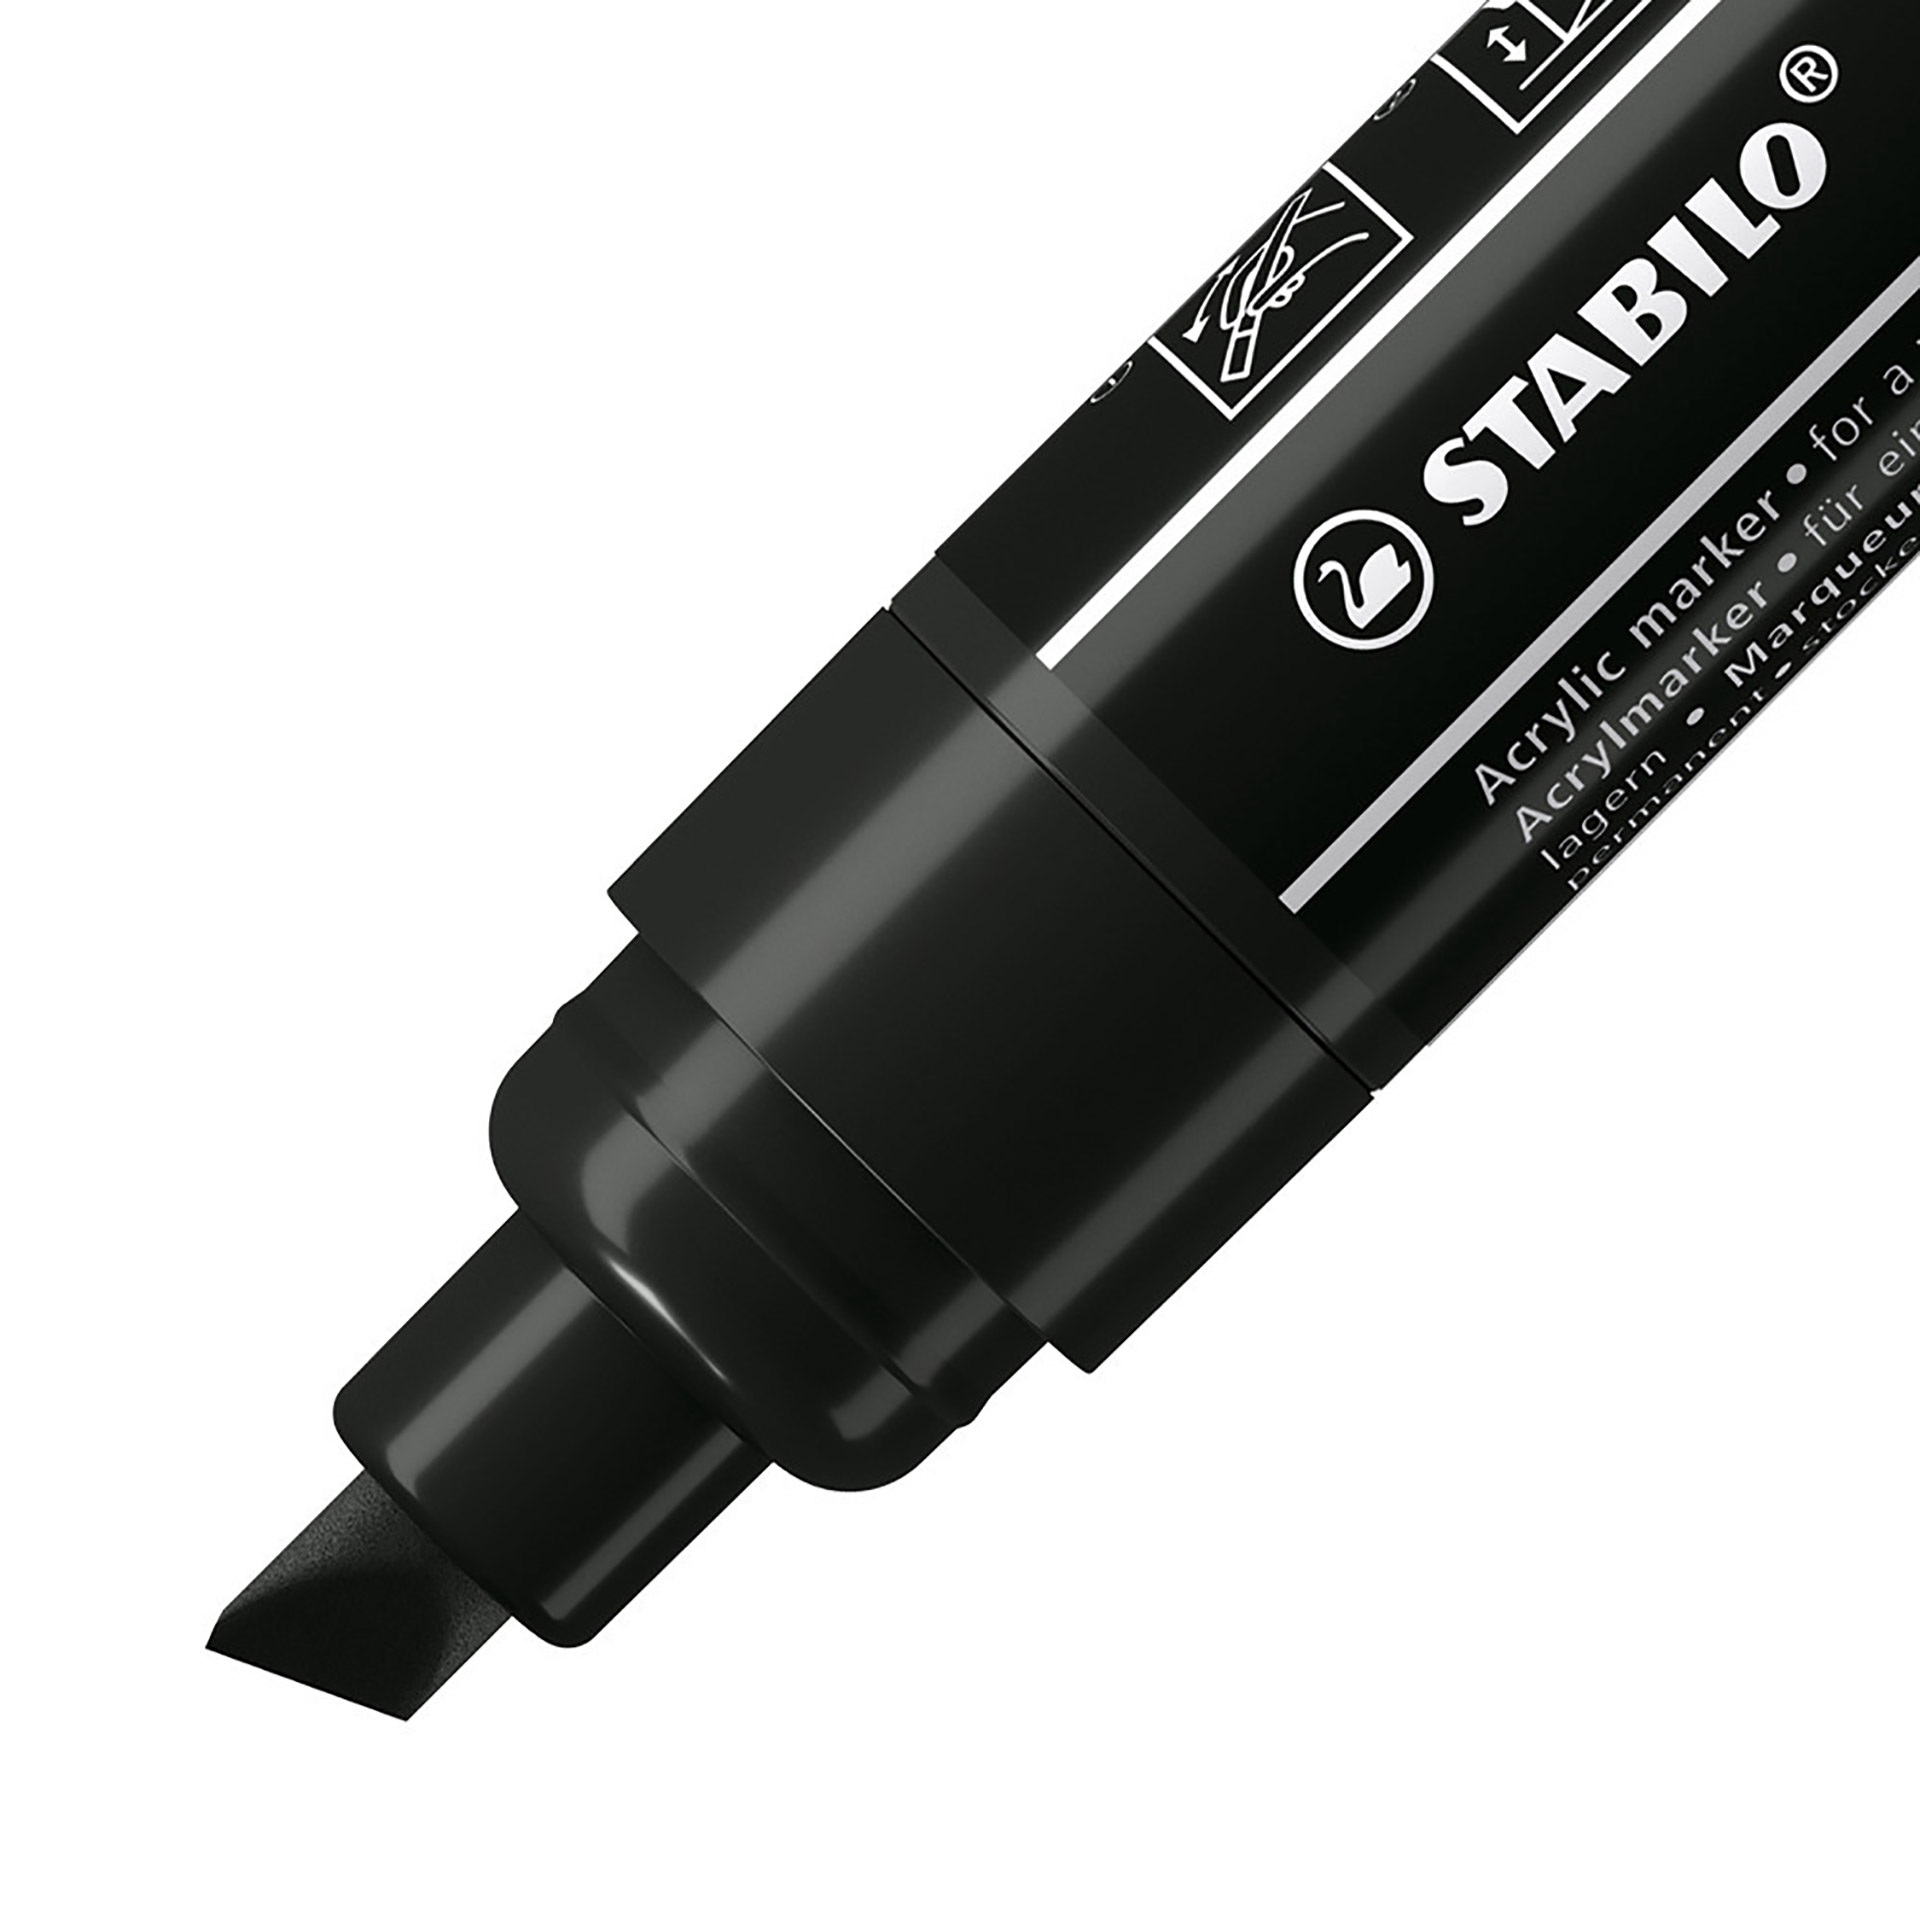 STABILO FREE Acrylic - T800C Punta a scalpello 4-10mm - Confezione da 5 - Nero, , large